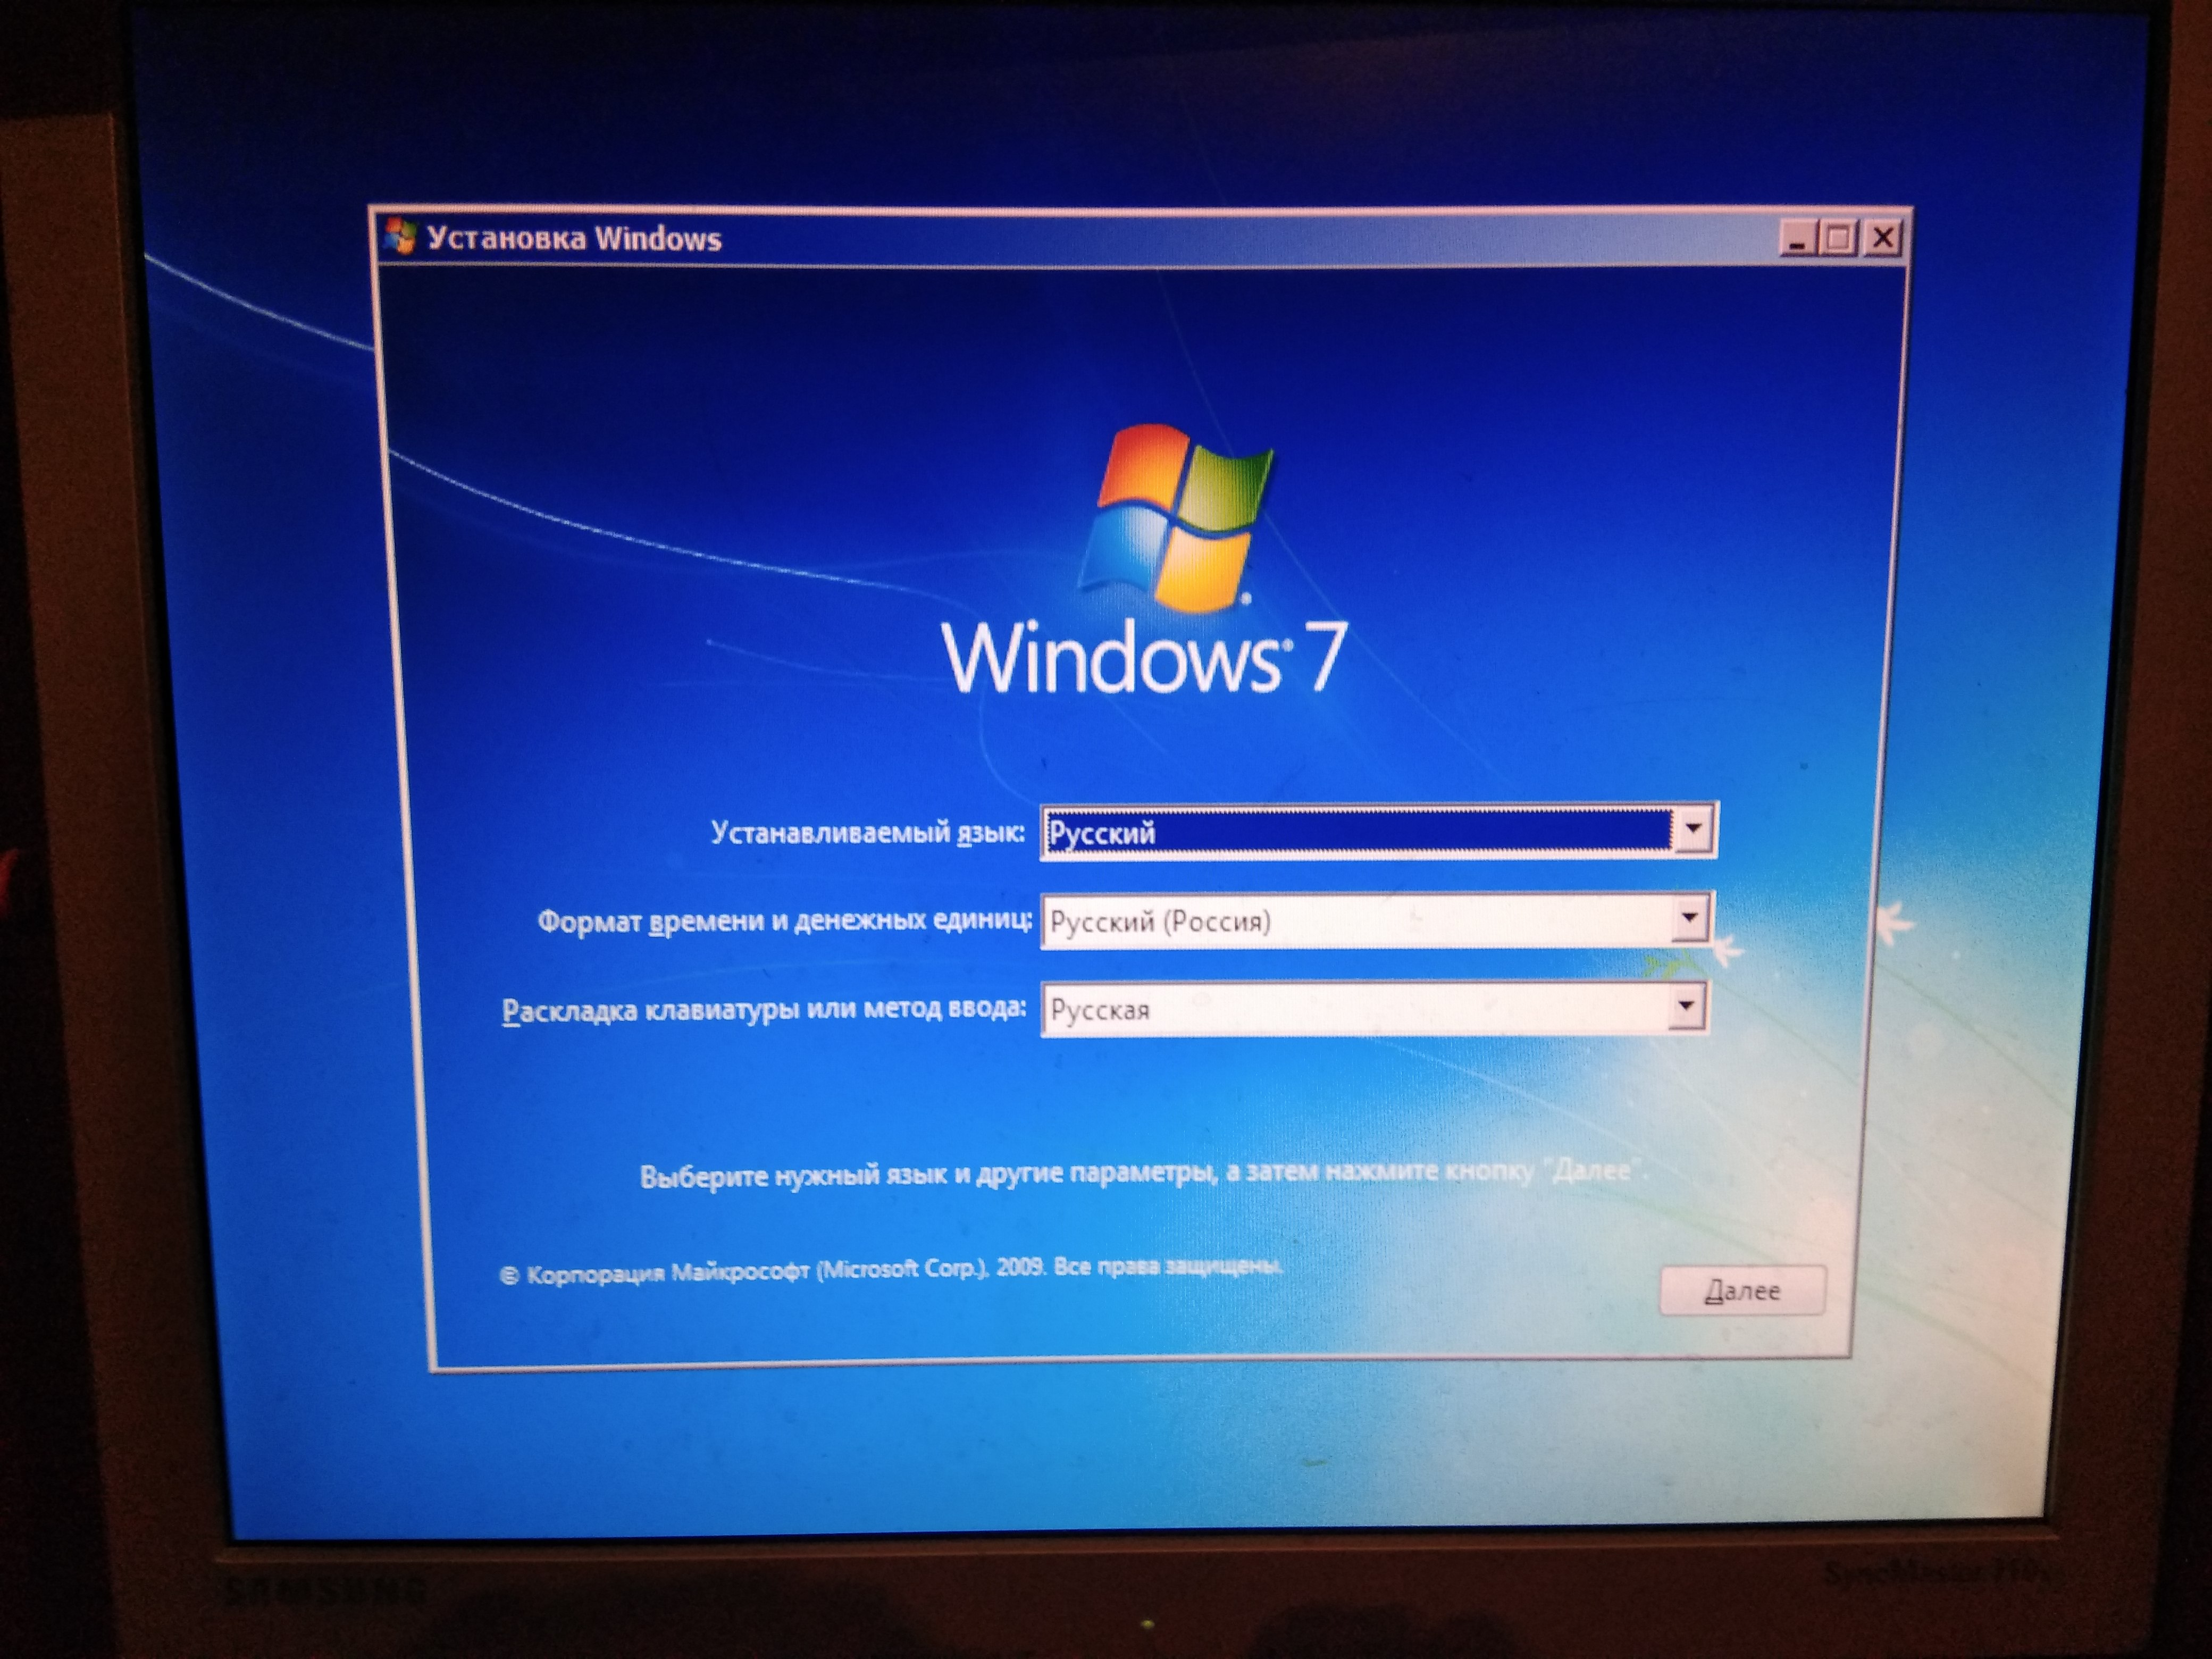 Обновление windows 7 до windows 10 без потери данных: 2 способа перехода